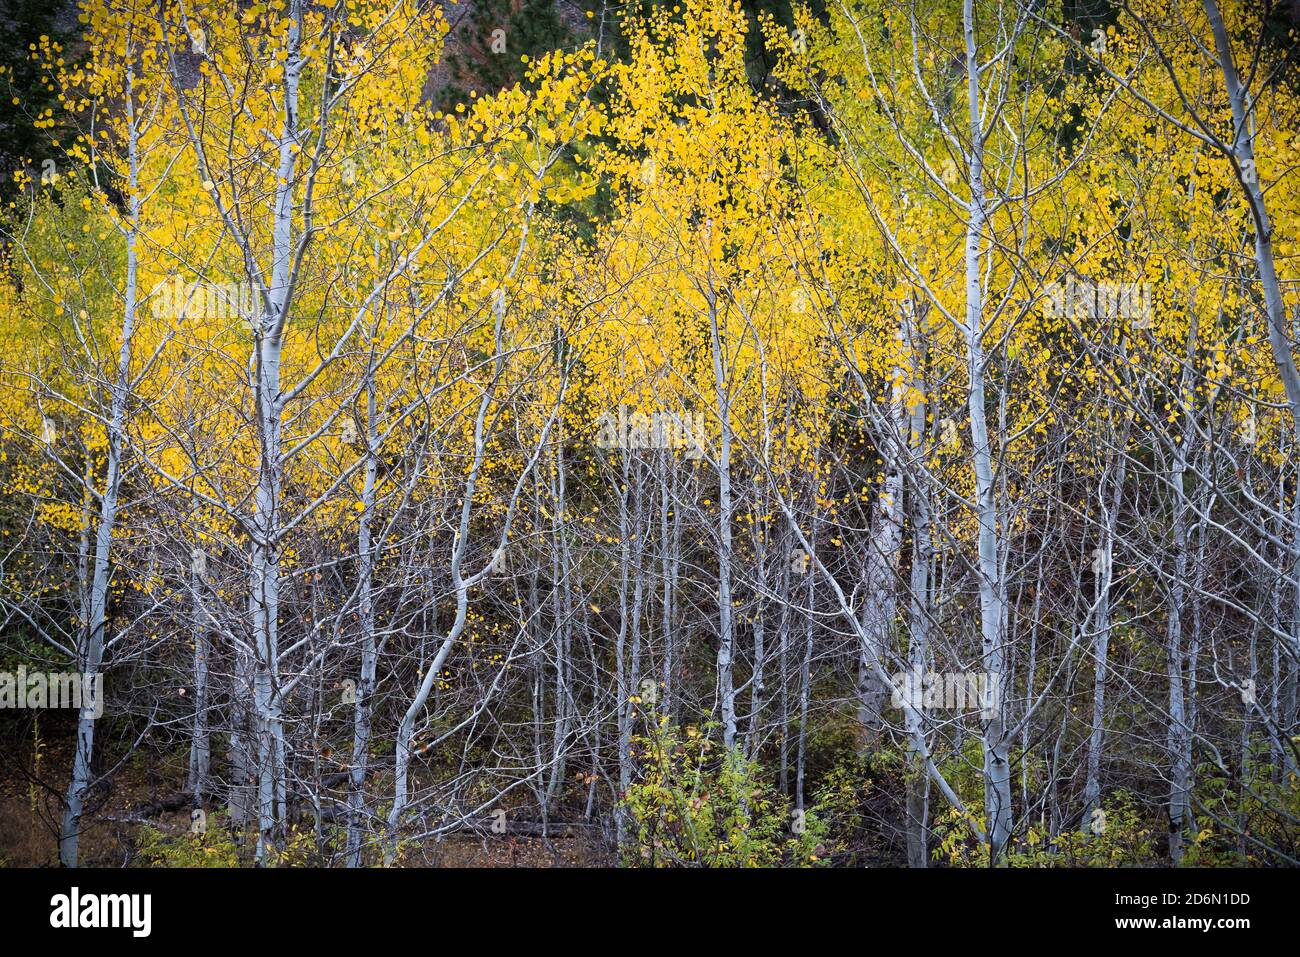 Foresta di alberi di aspen tremanti con foglie gialle in autunno Foto Stock